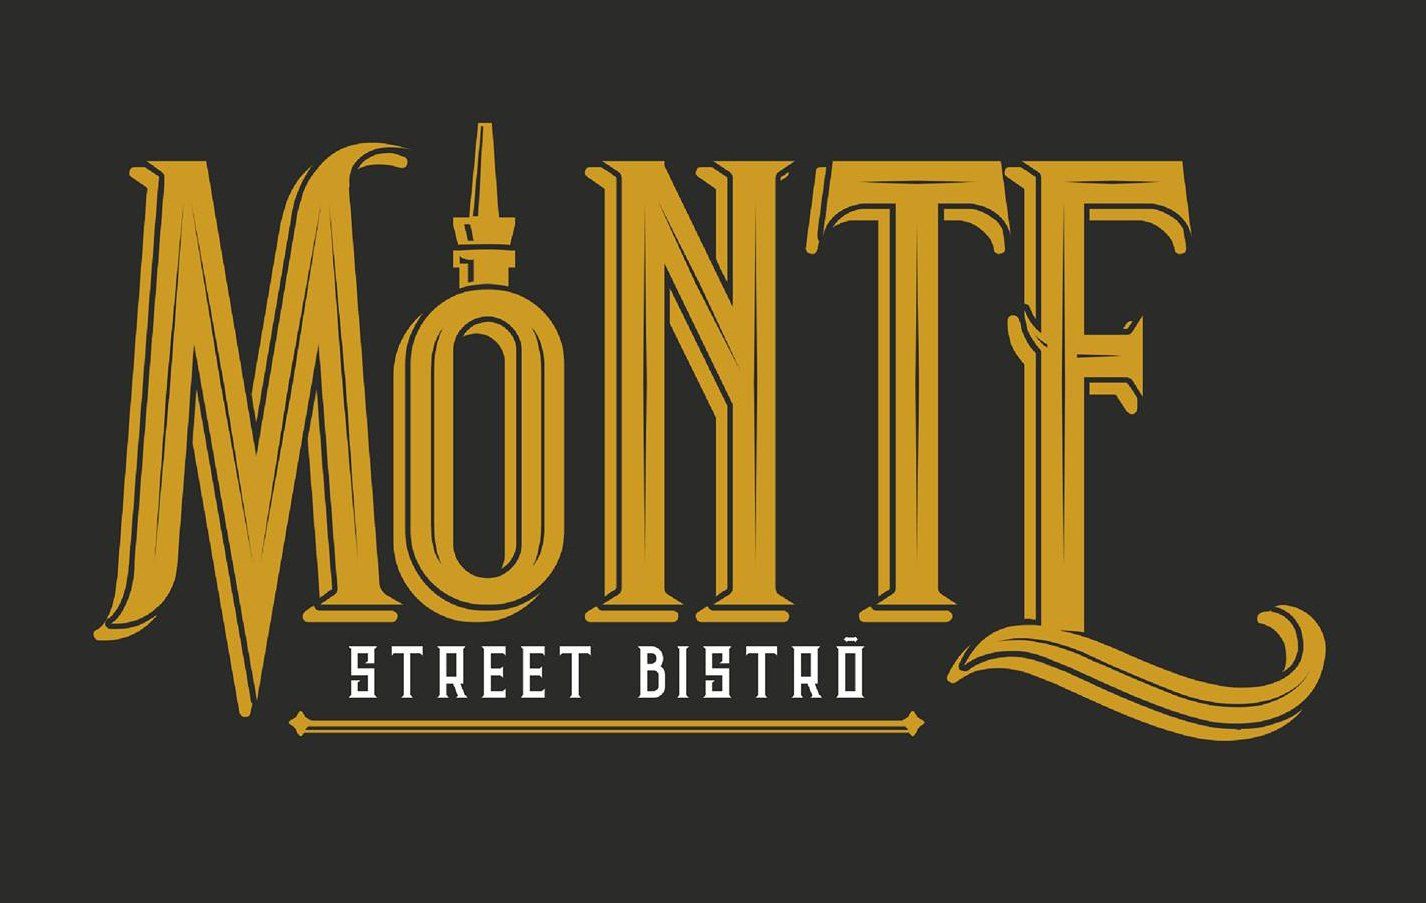 Monte Street Bistrò-LOGO